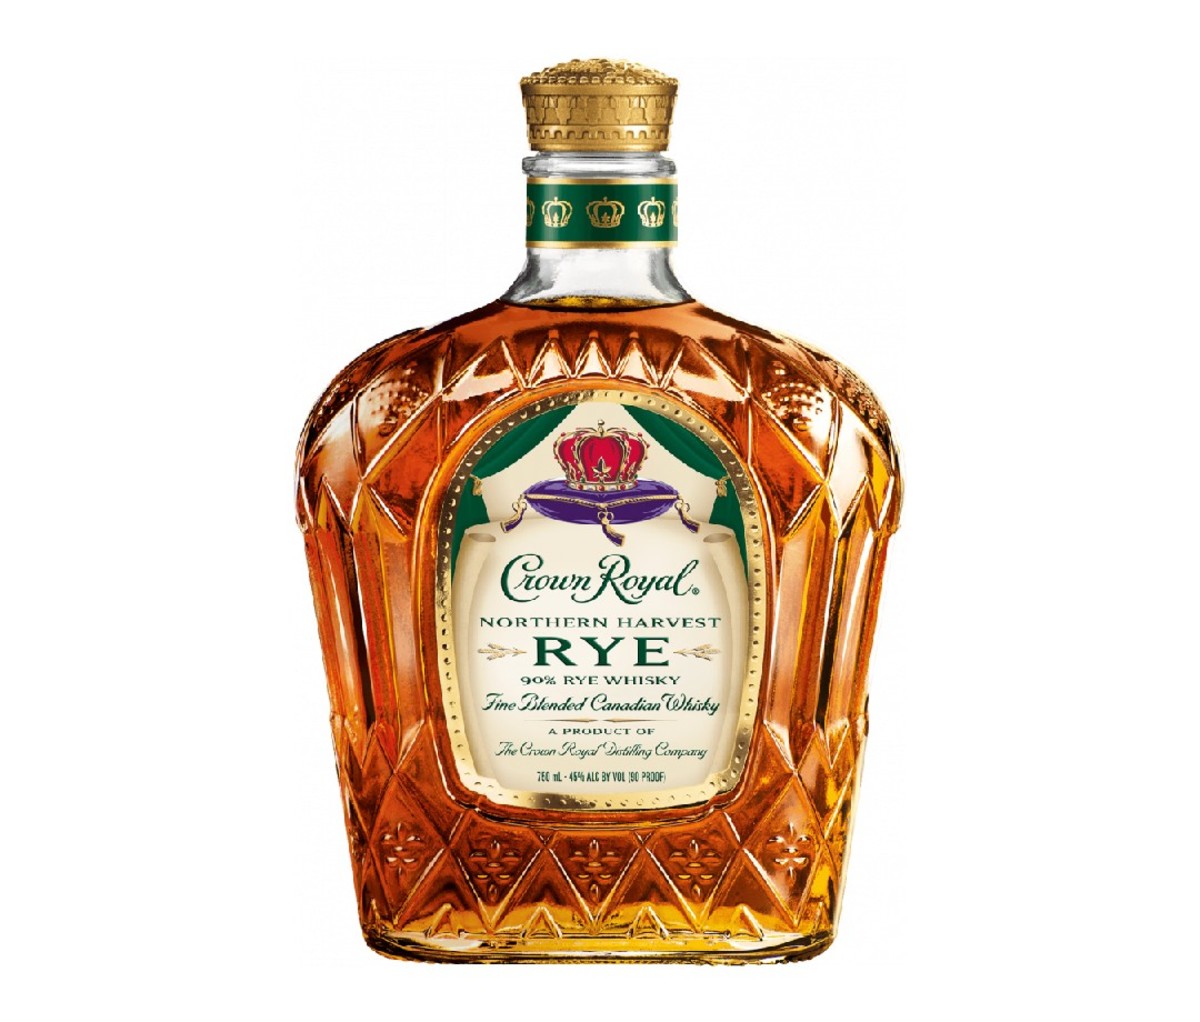 Bottle of Crown Royal Northern Harvest Rye